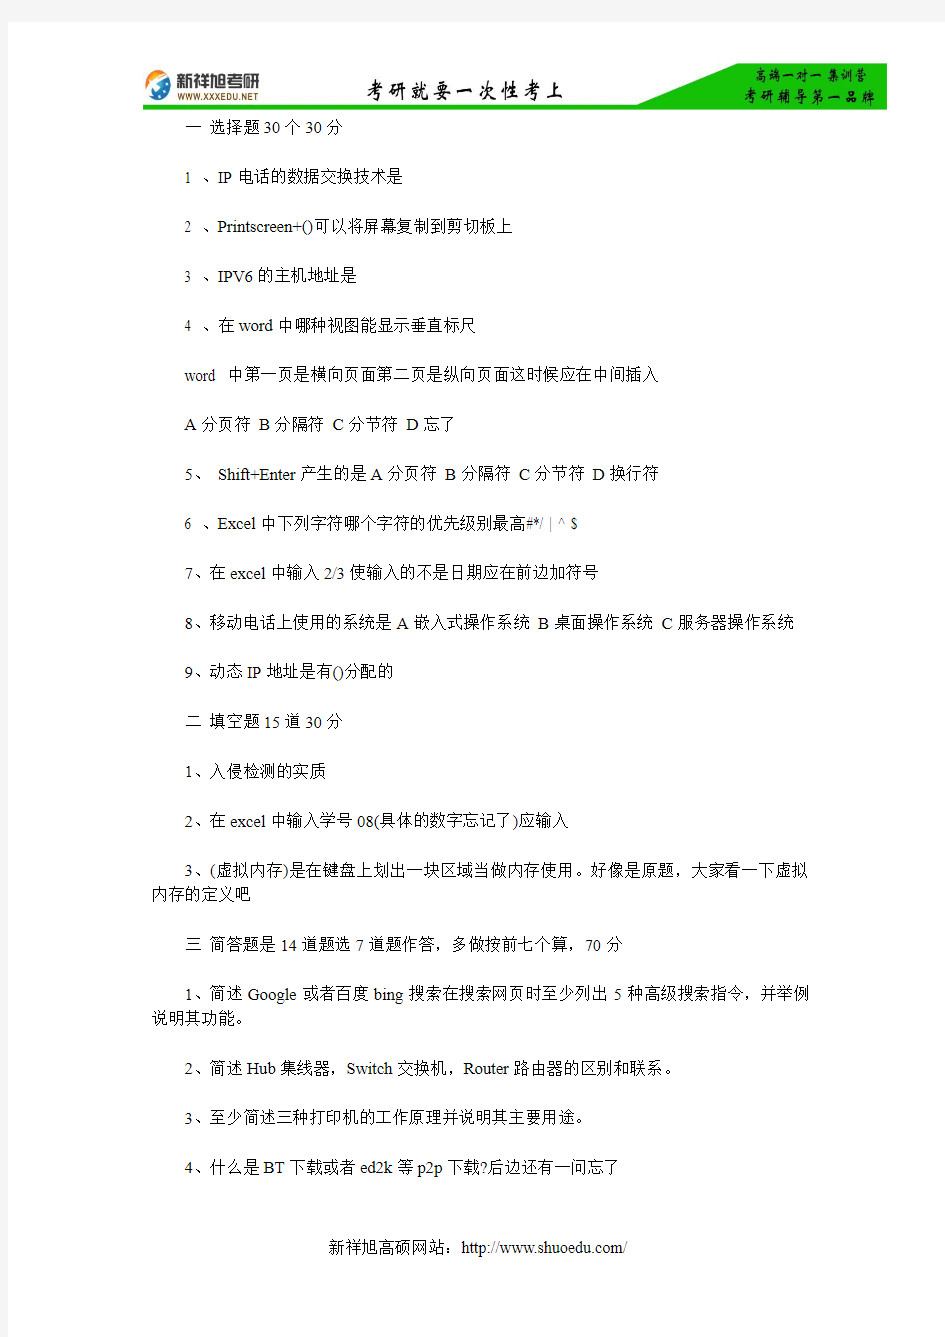 【考研真题】新祥旭权威发布：北京大学计算机应用基础2014年考研真题(回忆版)